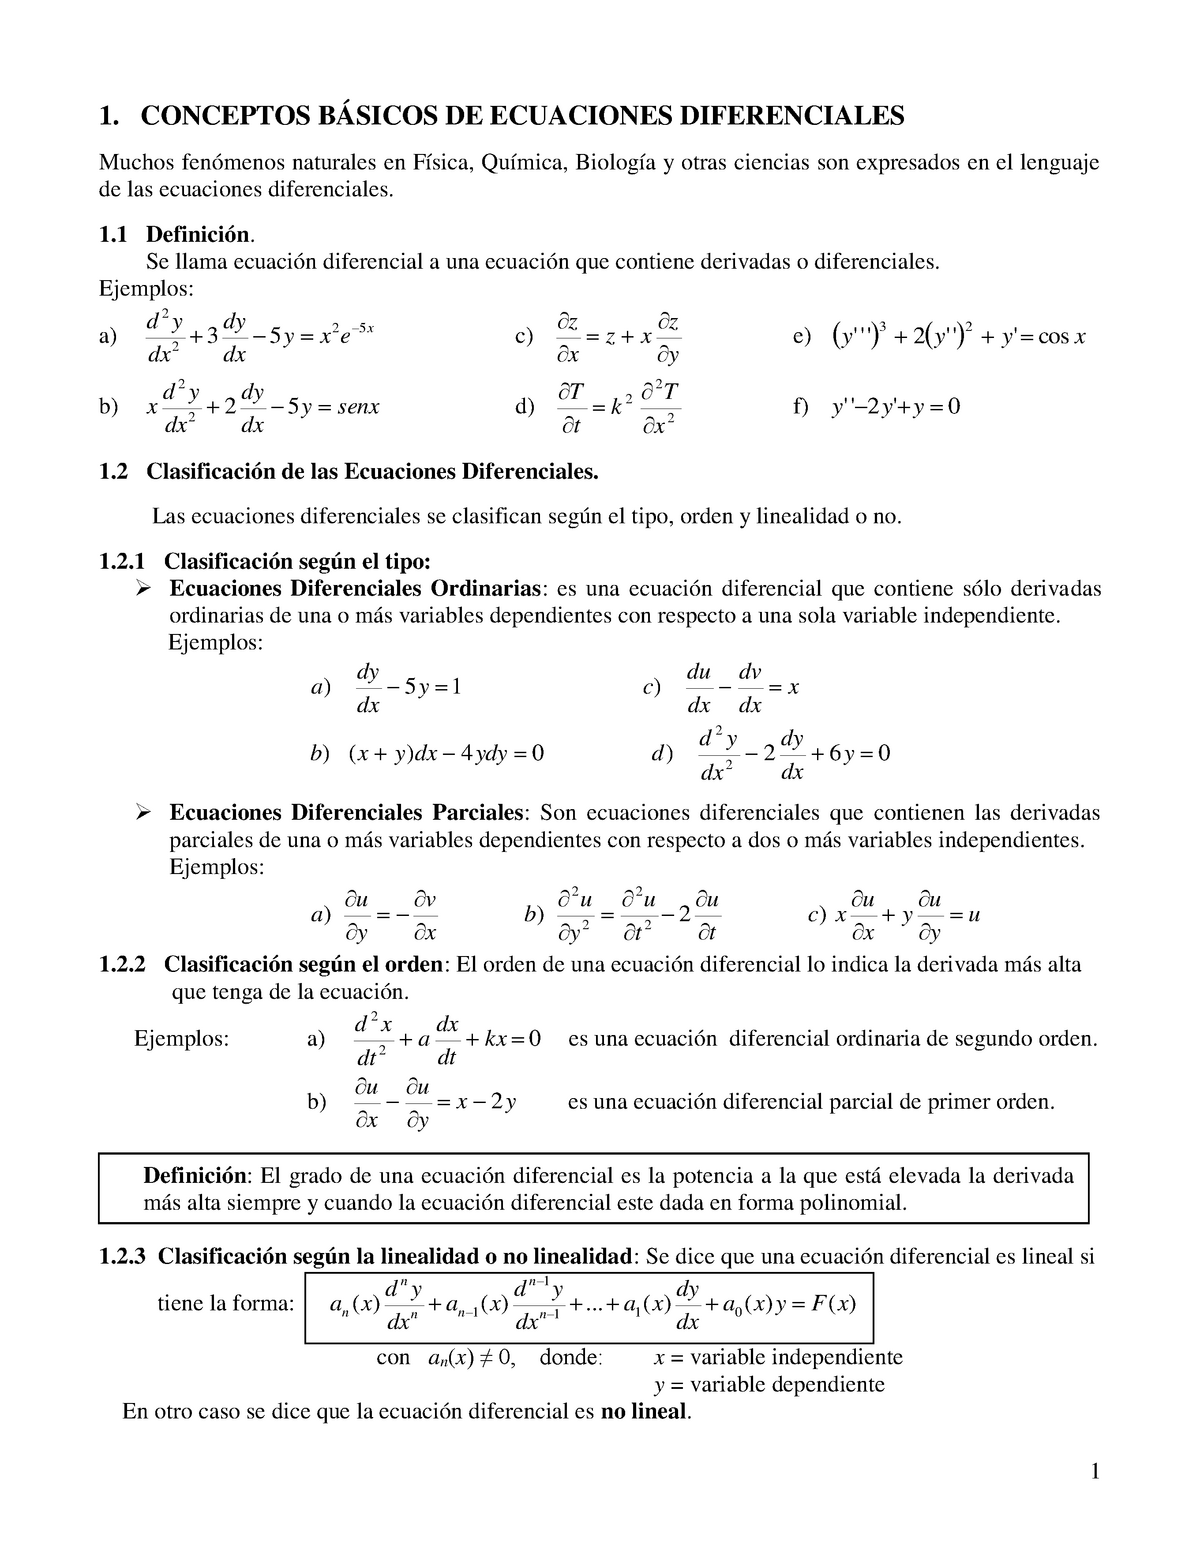 Conceptos BÁsicos De Ecuaciones Diferenciales 1 Conceptos BÁsicos De Ecuaciones Diferenciales 5582